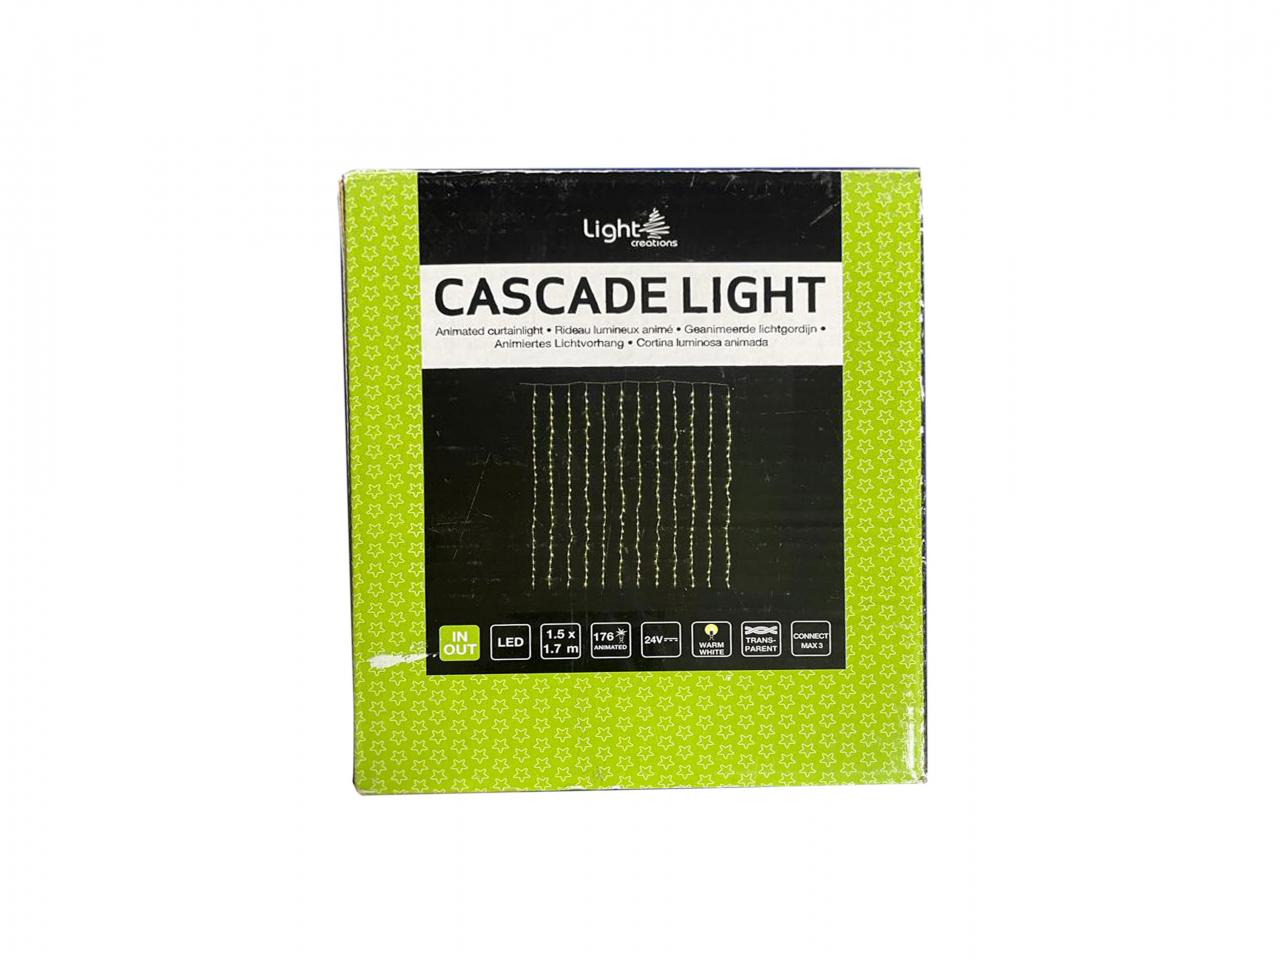 LED světelný řetěz LIGHTS CREATIONS Cascade Light, 176 LED žárovek, 1,5 x 1,7 m